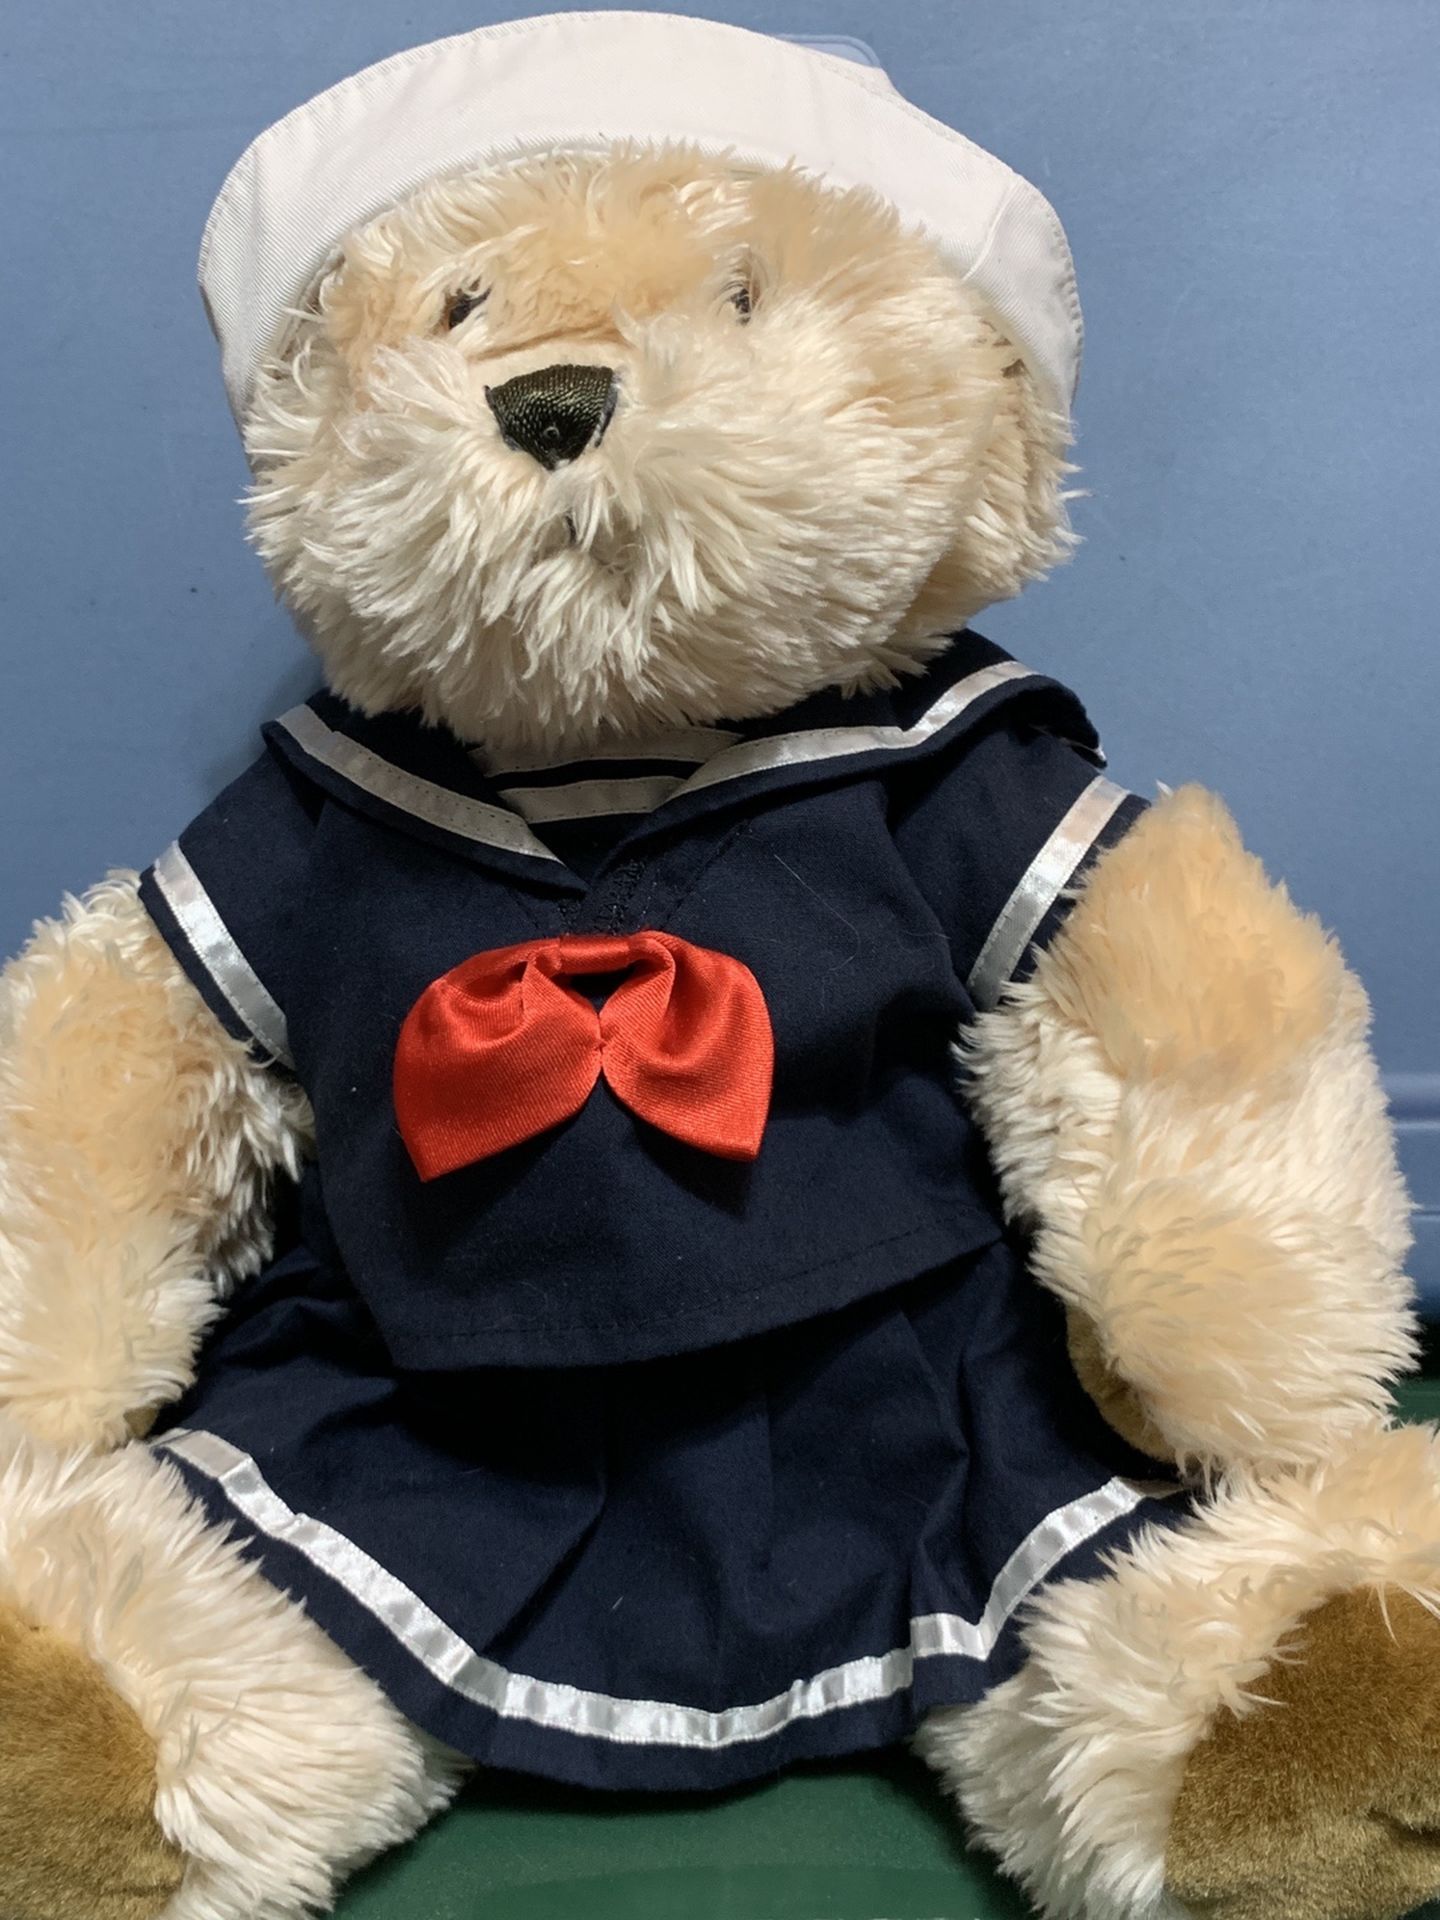 Large Stuffed Teddy Bear With Sailor Dress On